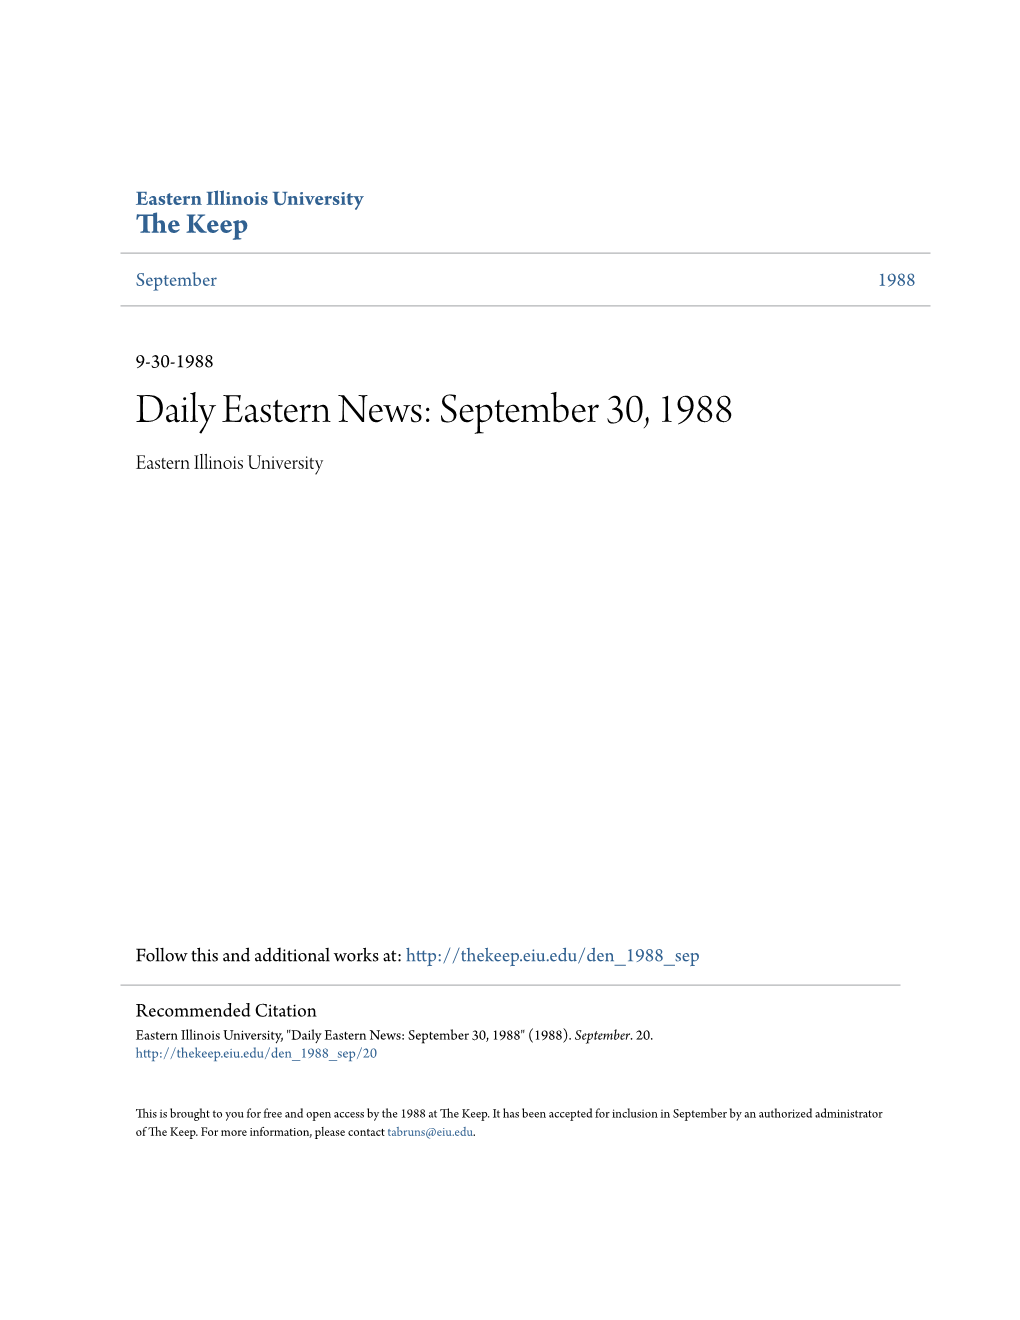 Aily Eastern News: September 30, 1988 Eastern Illinois University